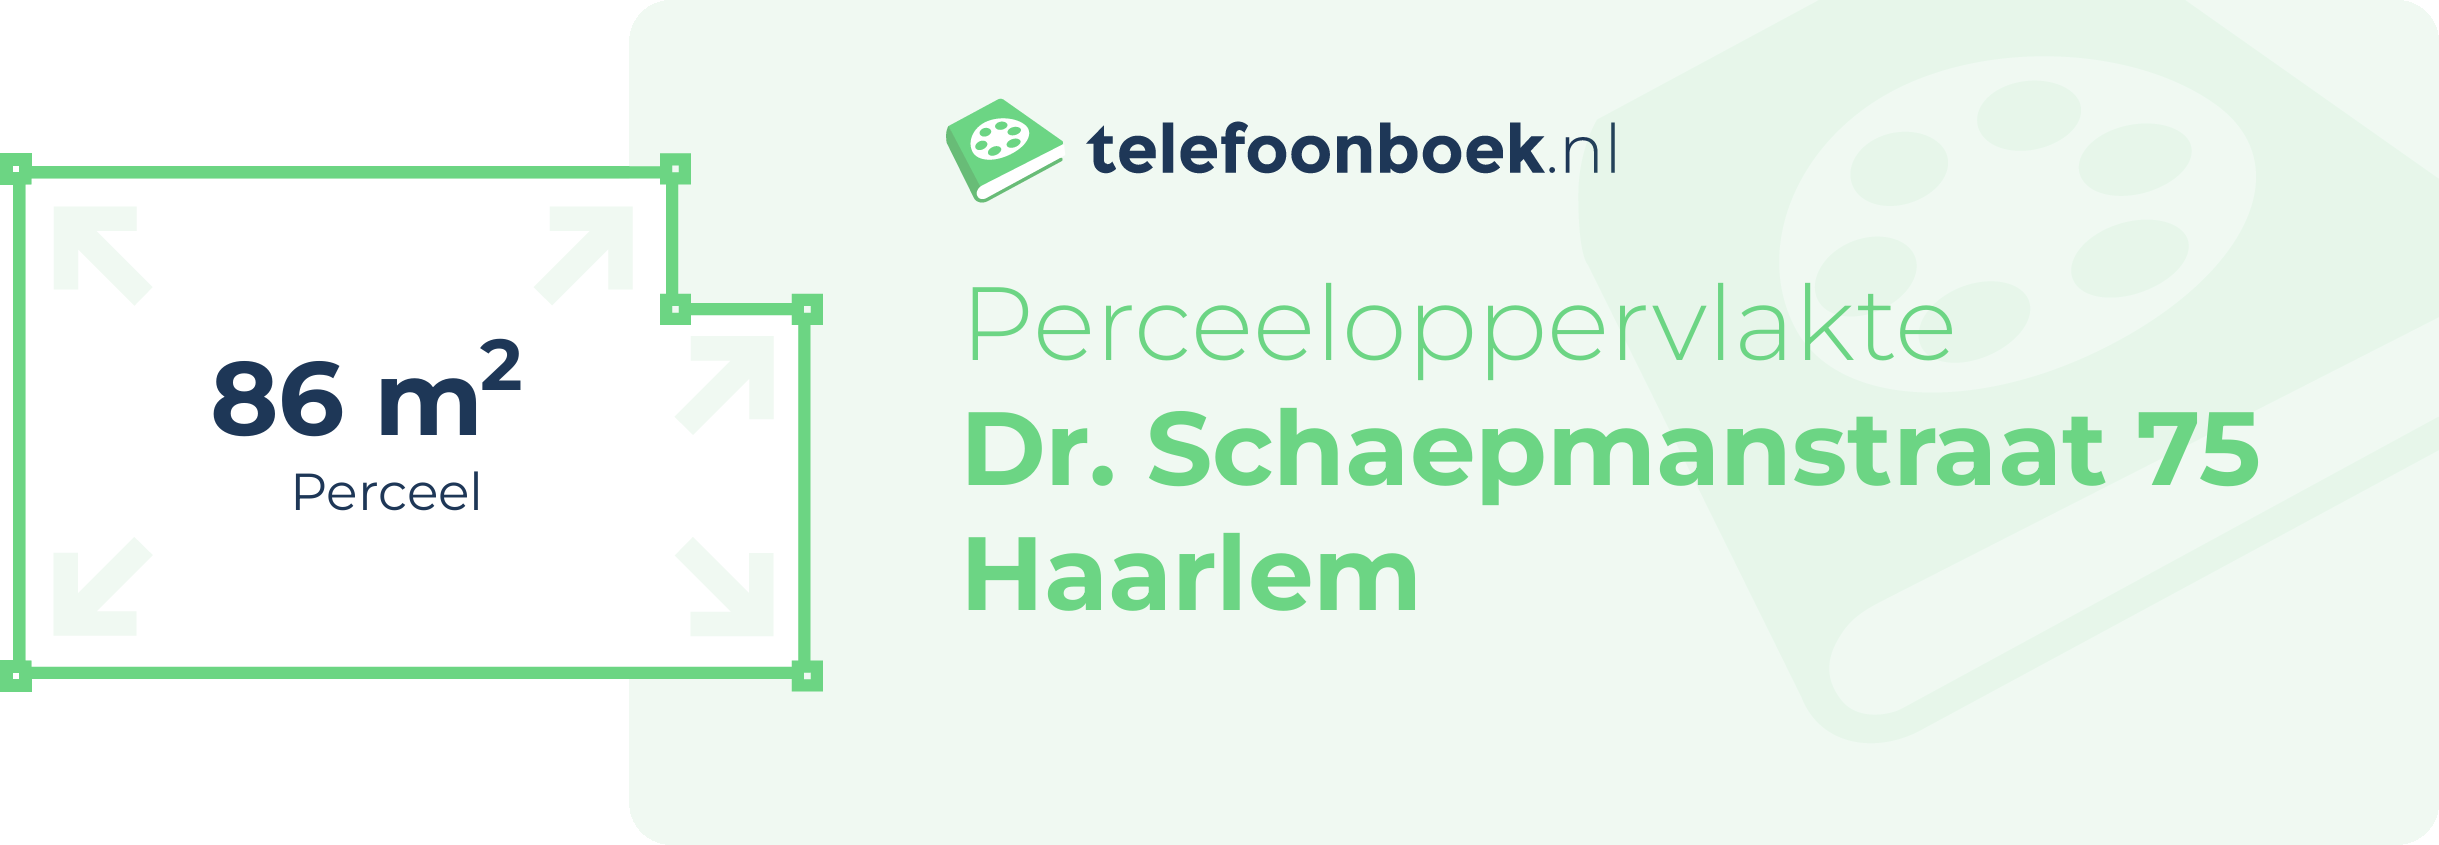 Perceeloppervlakte Dr. Schaepmanstraat 75 Haarlem